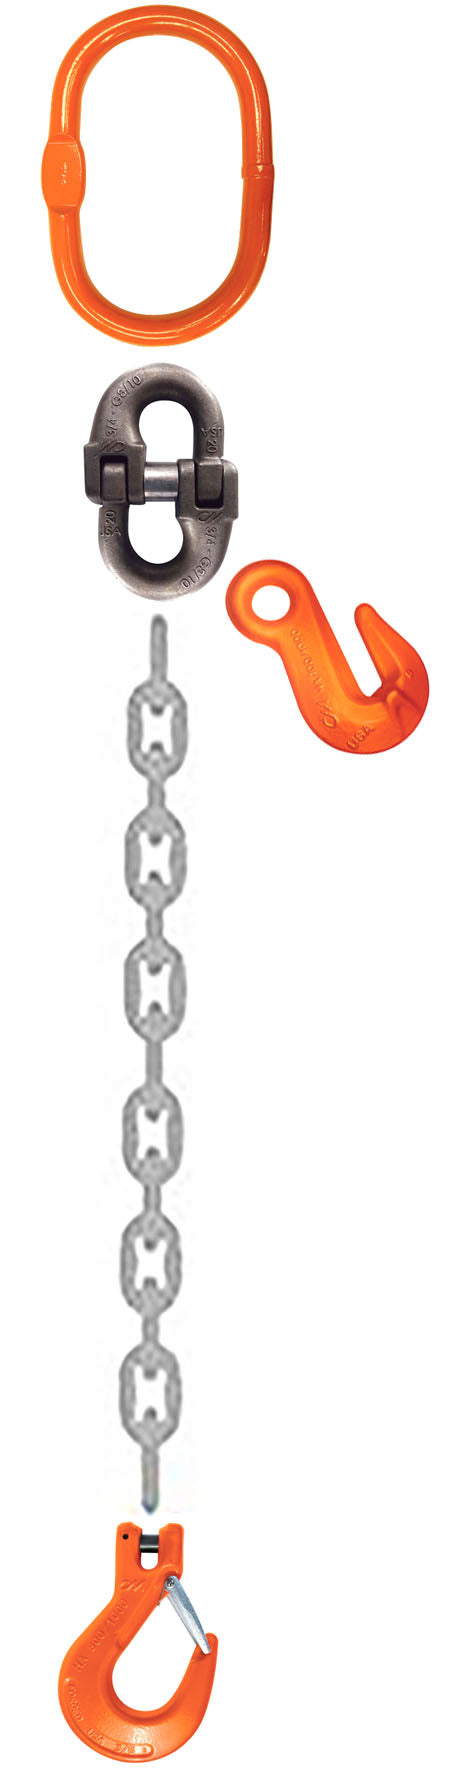 CM Grade 100 SOS 1 Leg Adjustable Type A Chain Sling - Clevlok Sling Hook